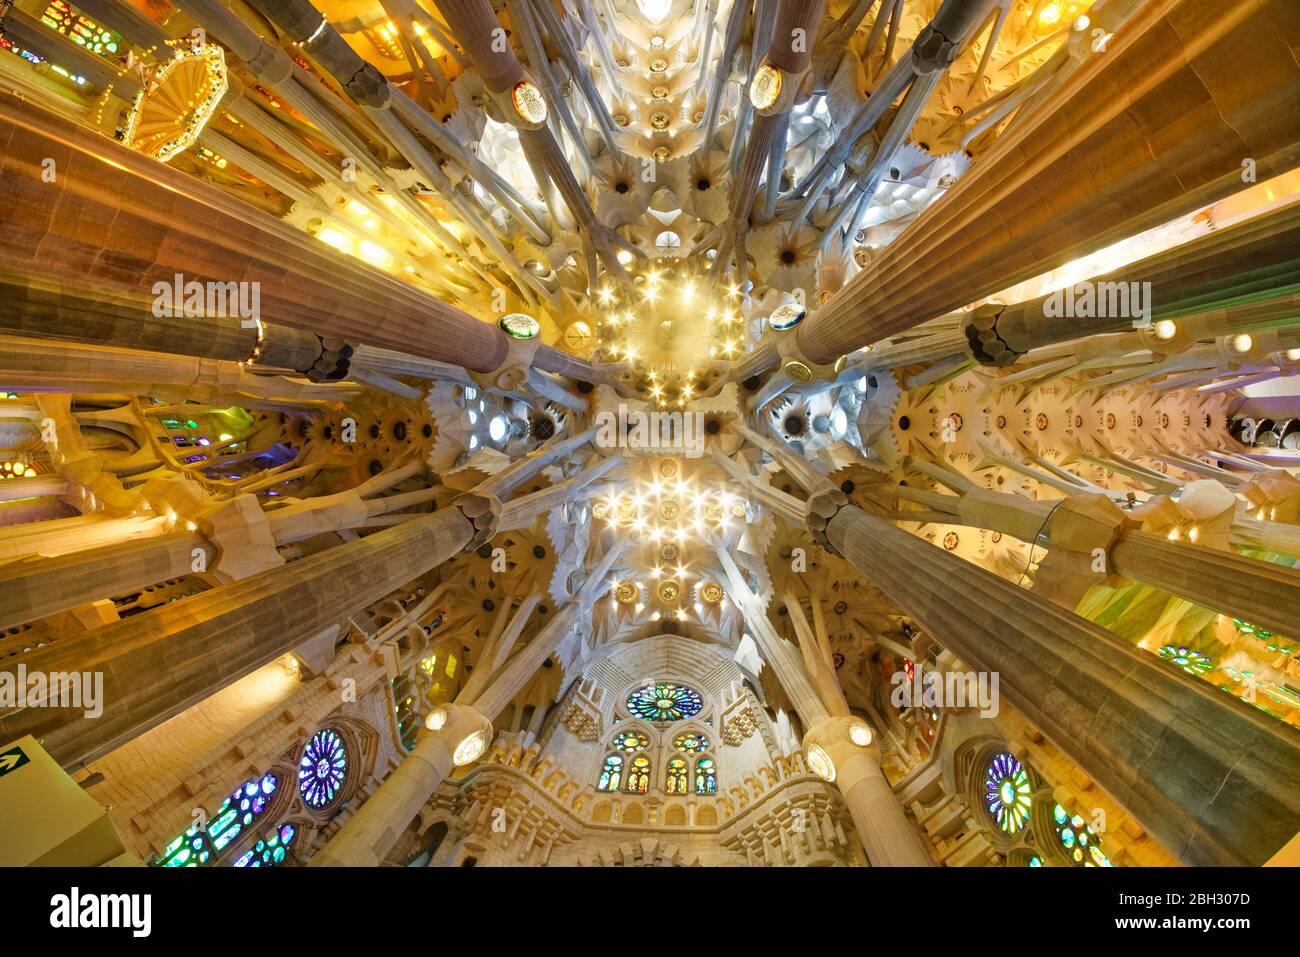 Plafond de la cathédrale de la Sagrada Familia par Antoni Gaudi, Barcelone Banque D'Images